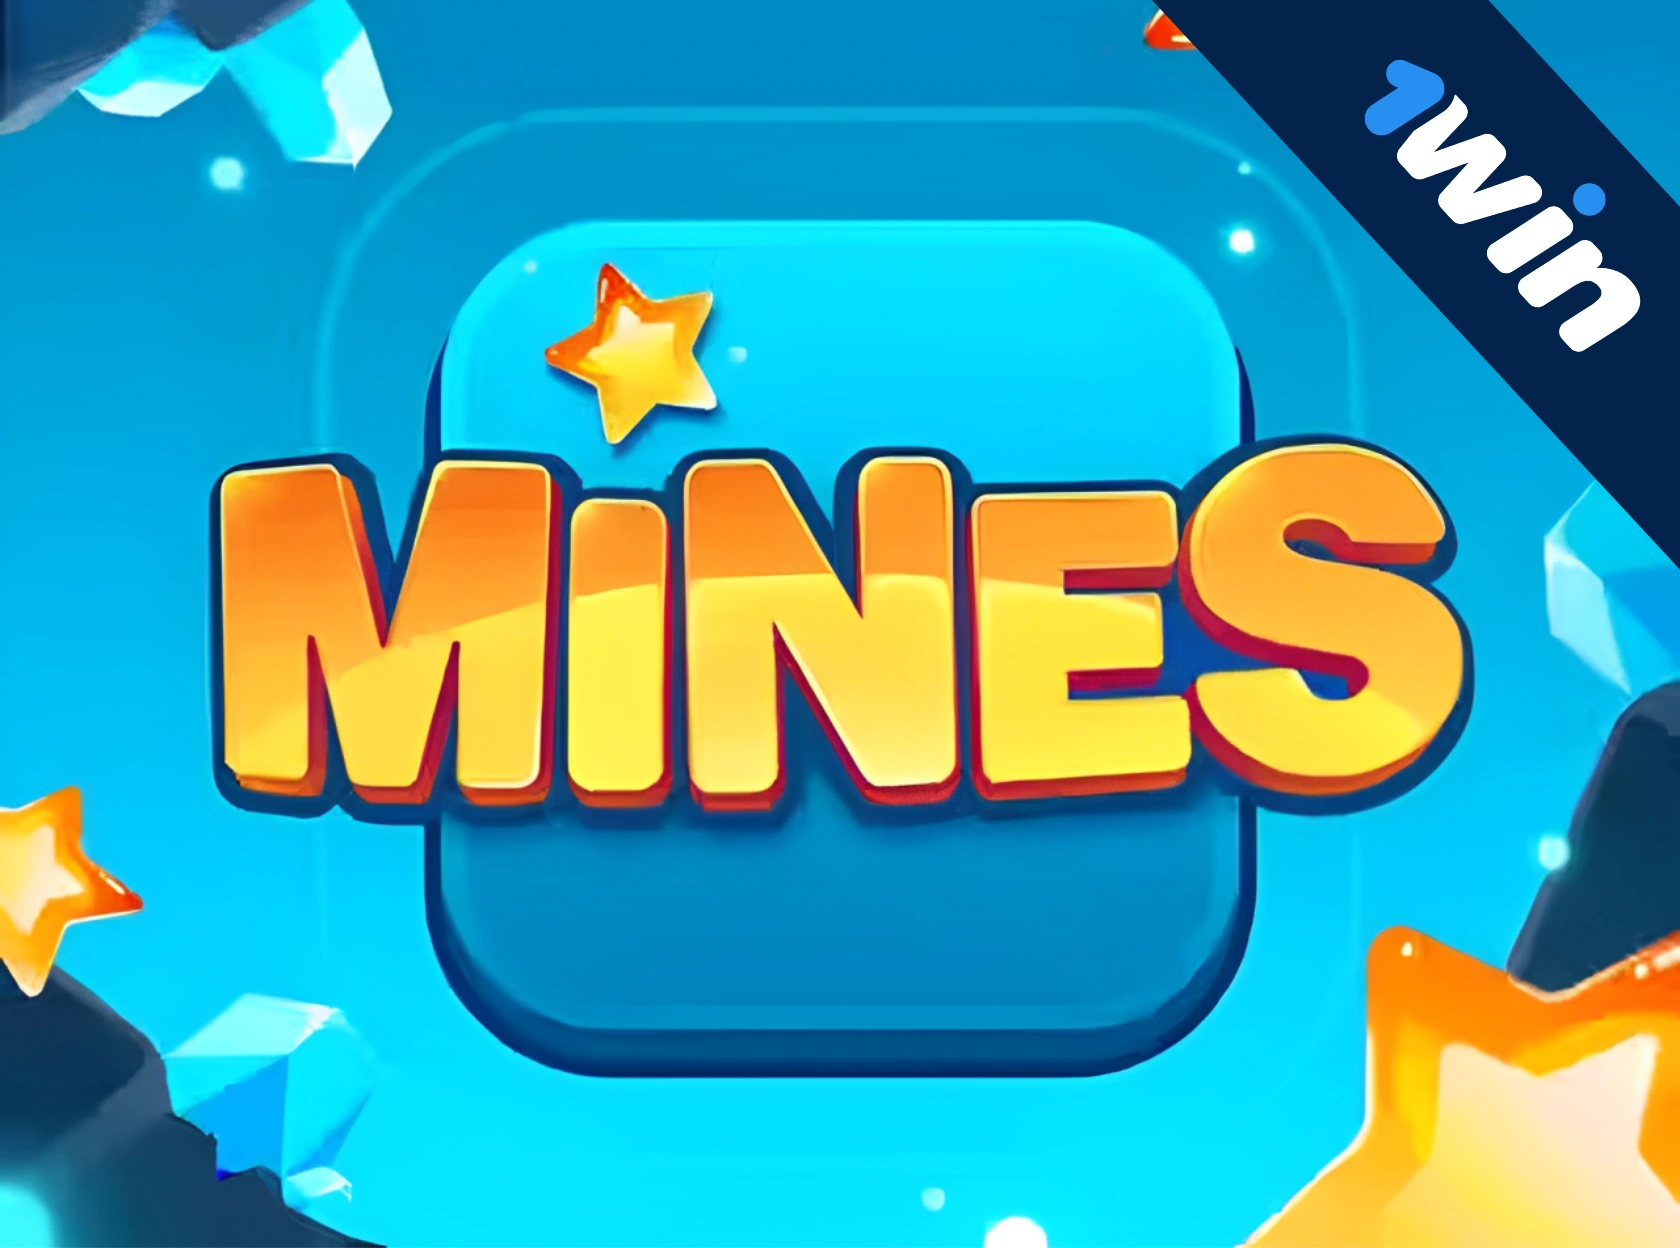 1win Mines - pul üçün Minesweeper oynayın!